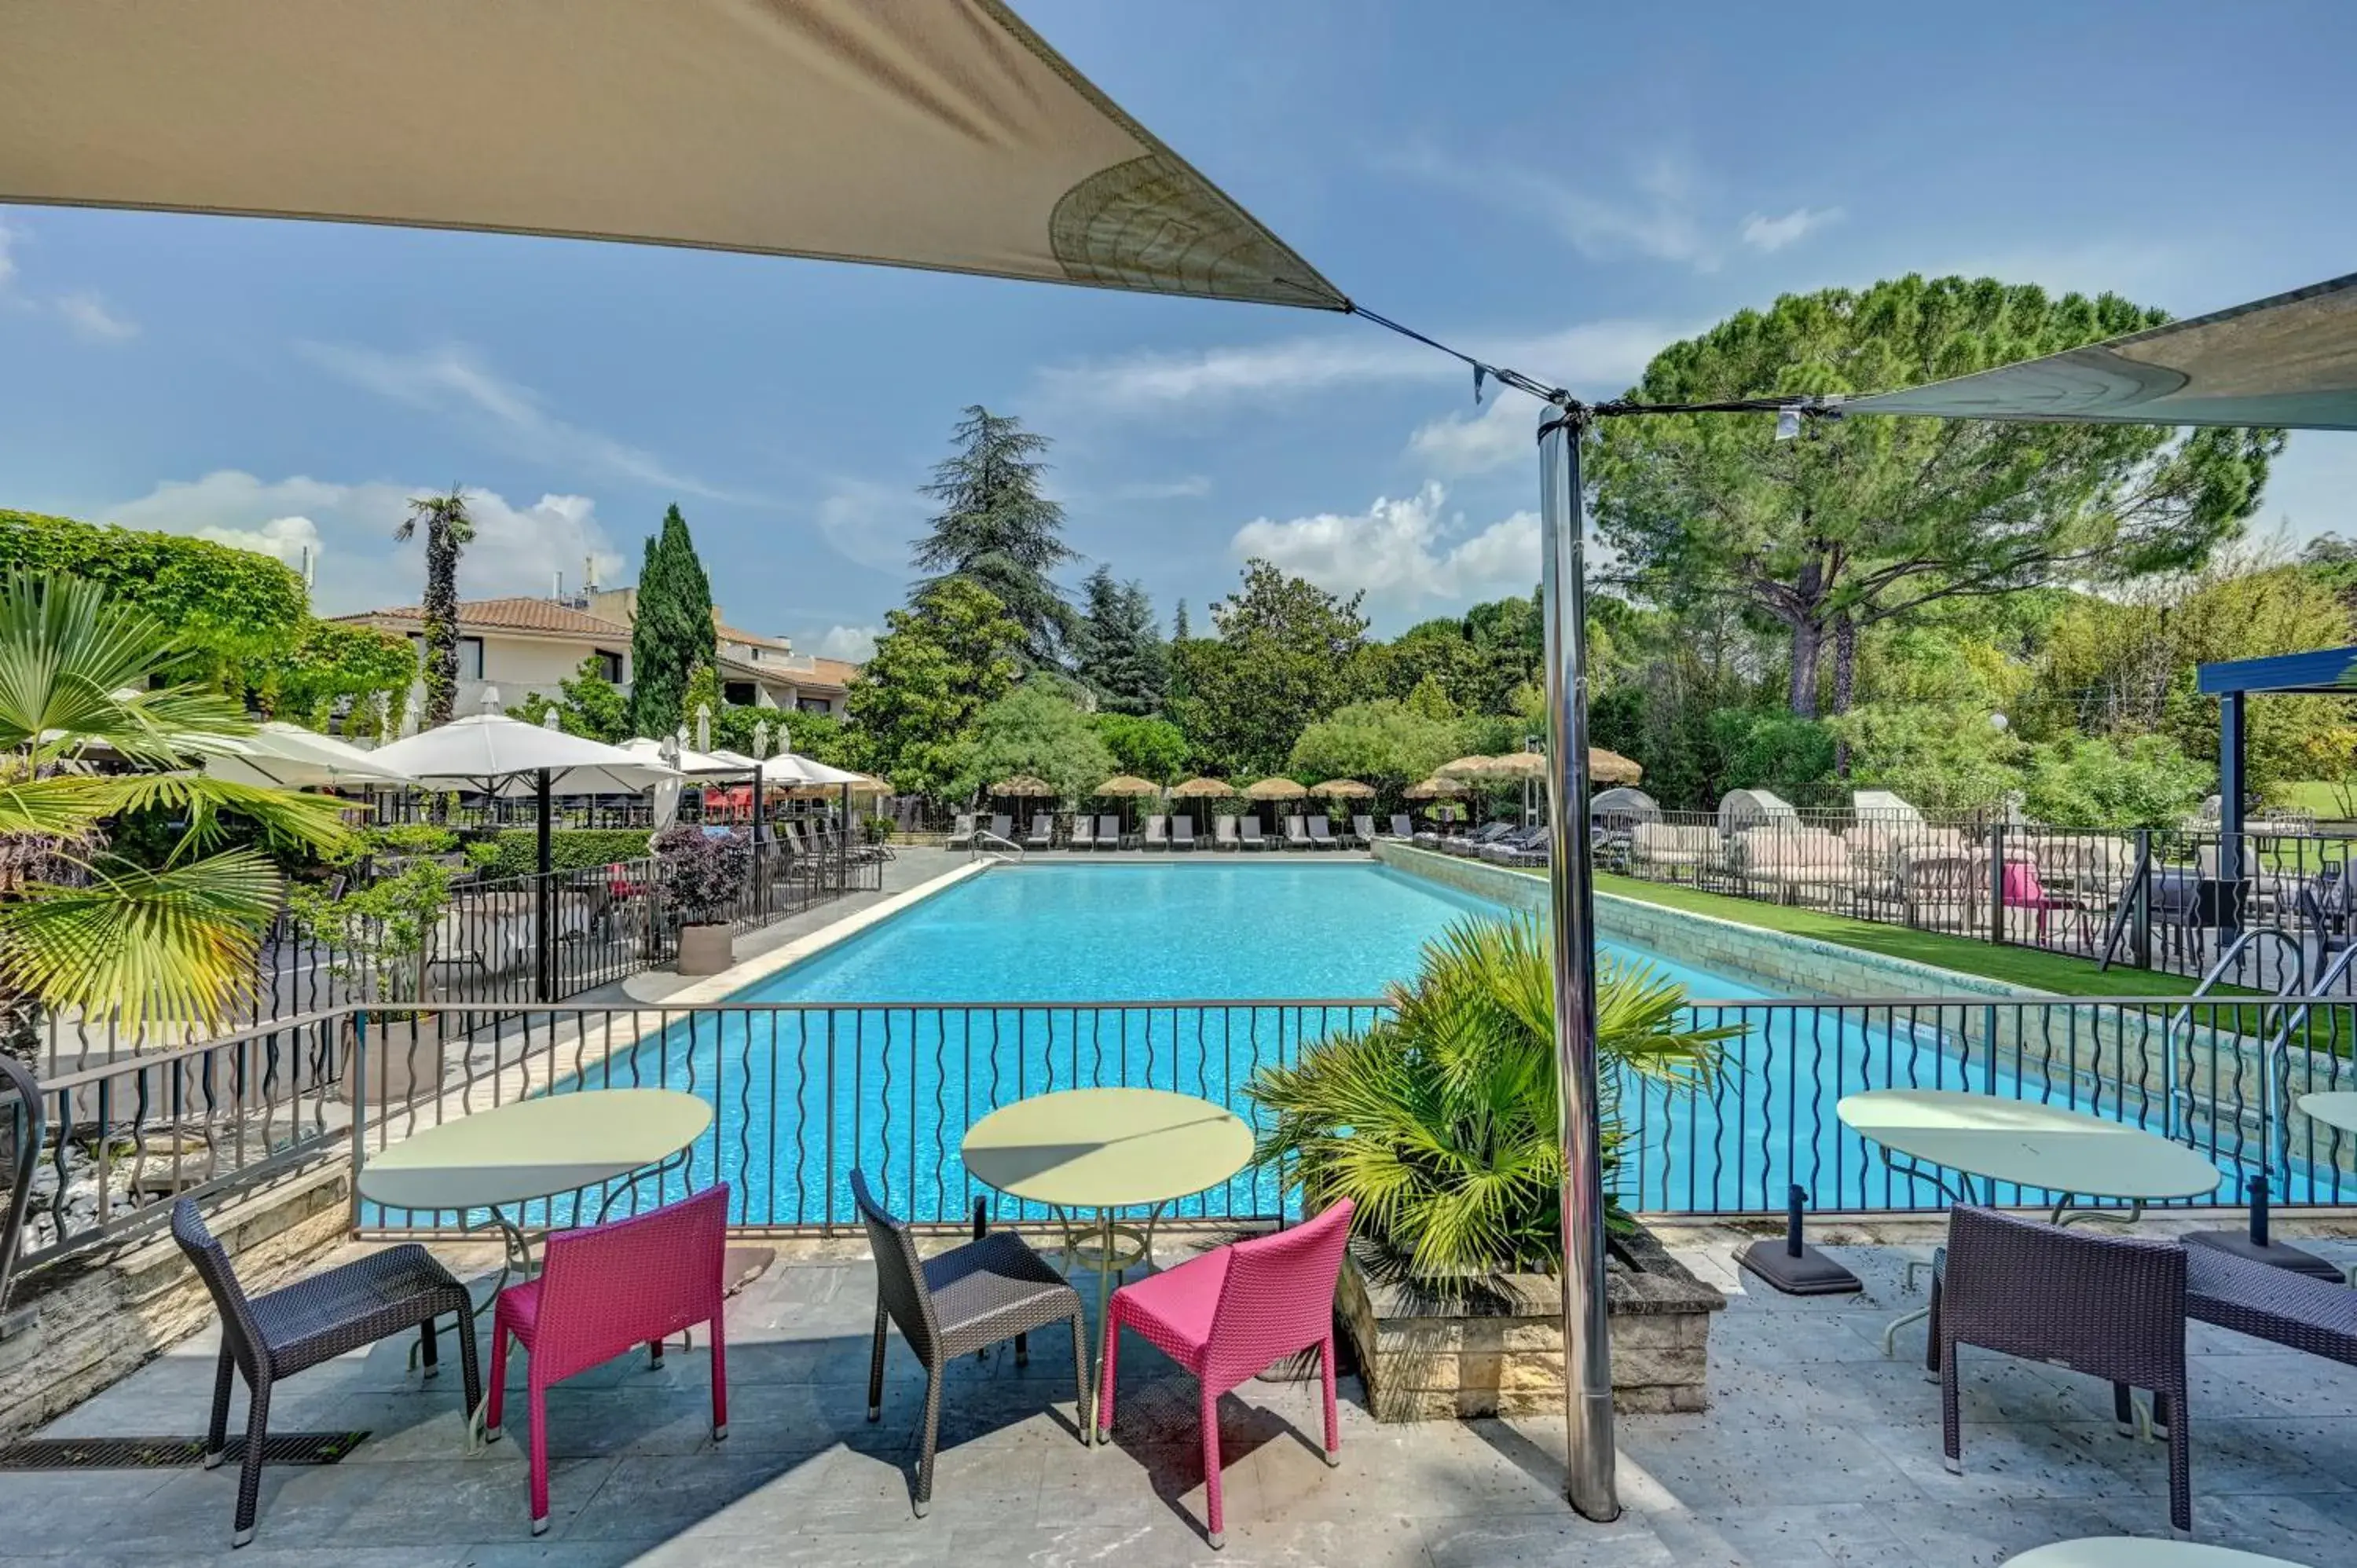 Patio, Pool View in Best Western Sevan Parc Hotel